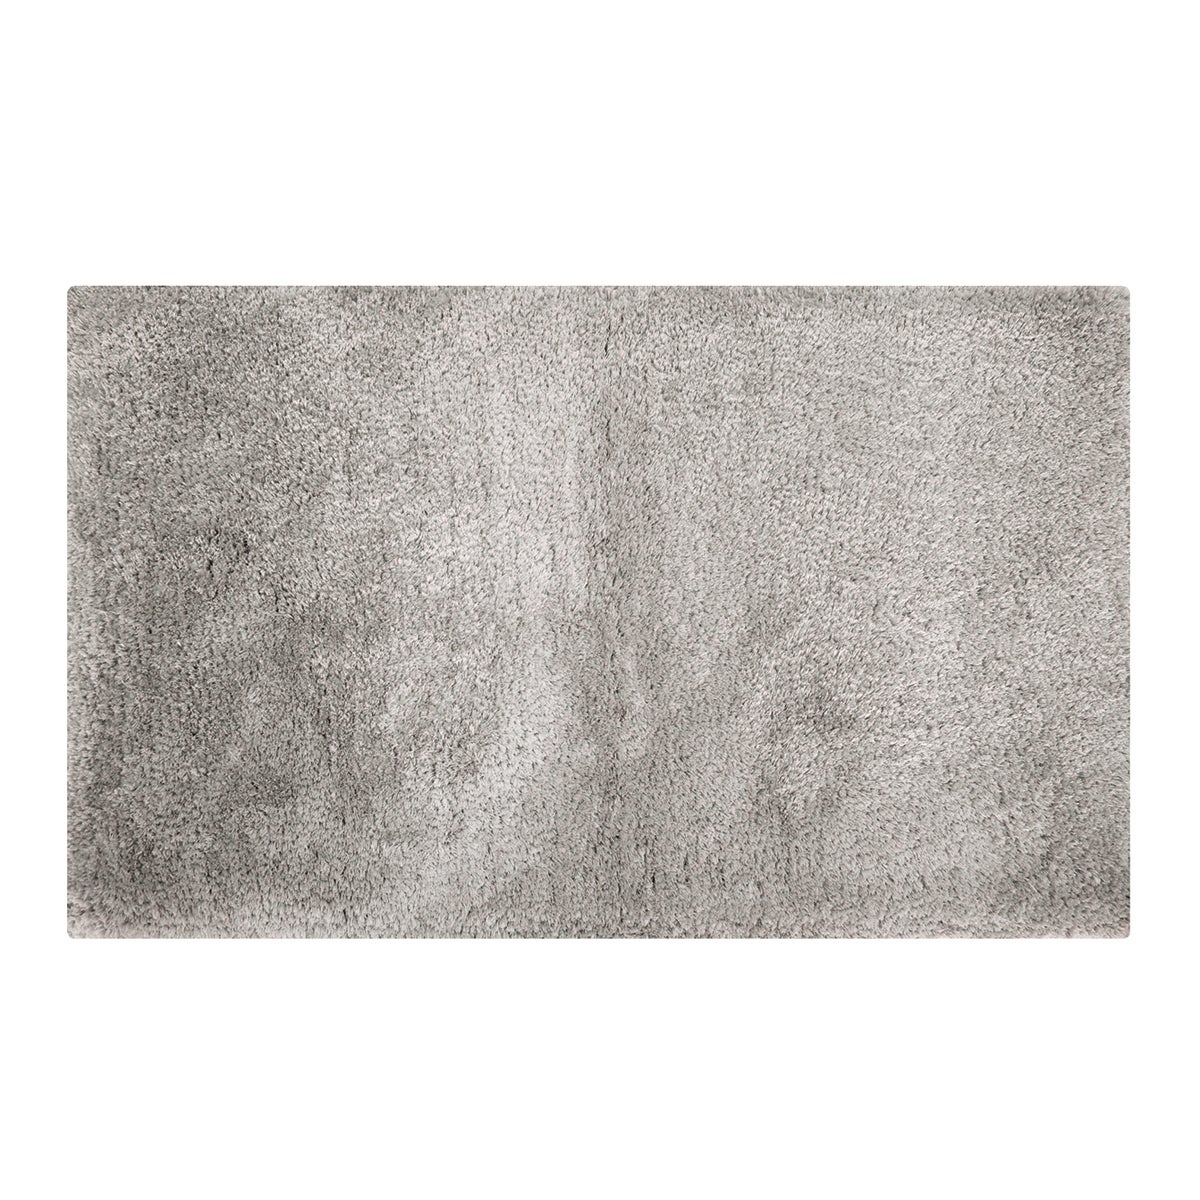 Tappeto bagno rettangolare in poliestere grigio 80.0 x 50.0 cmØ 94.0 cm